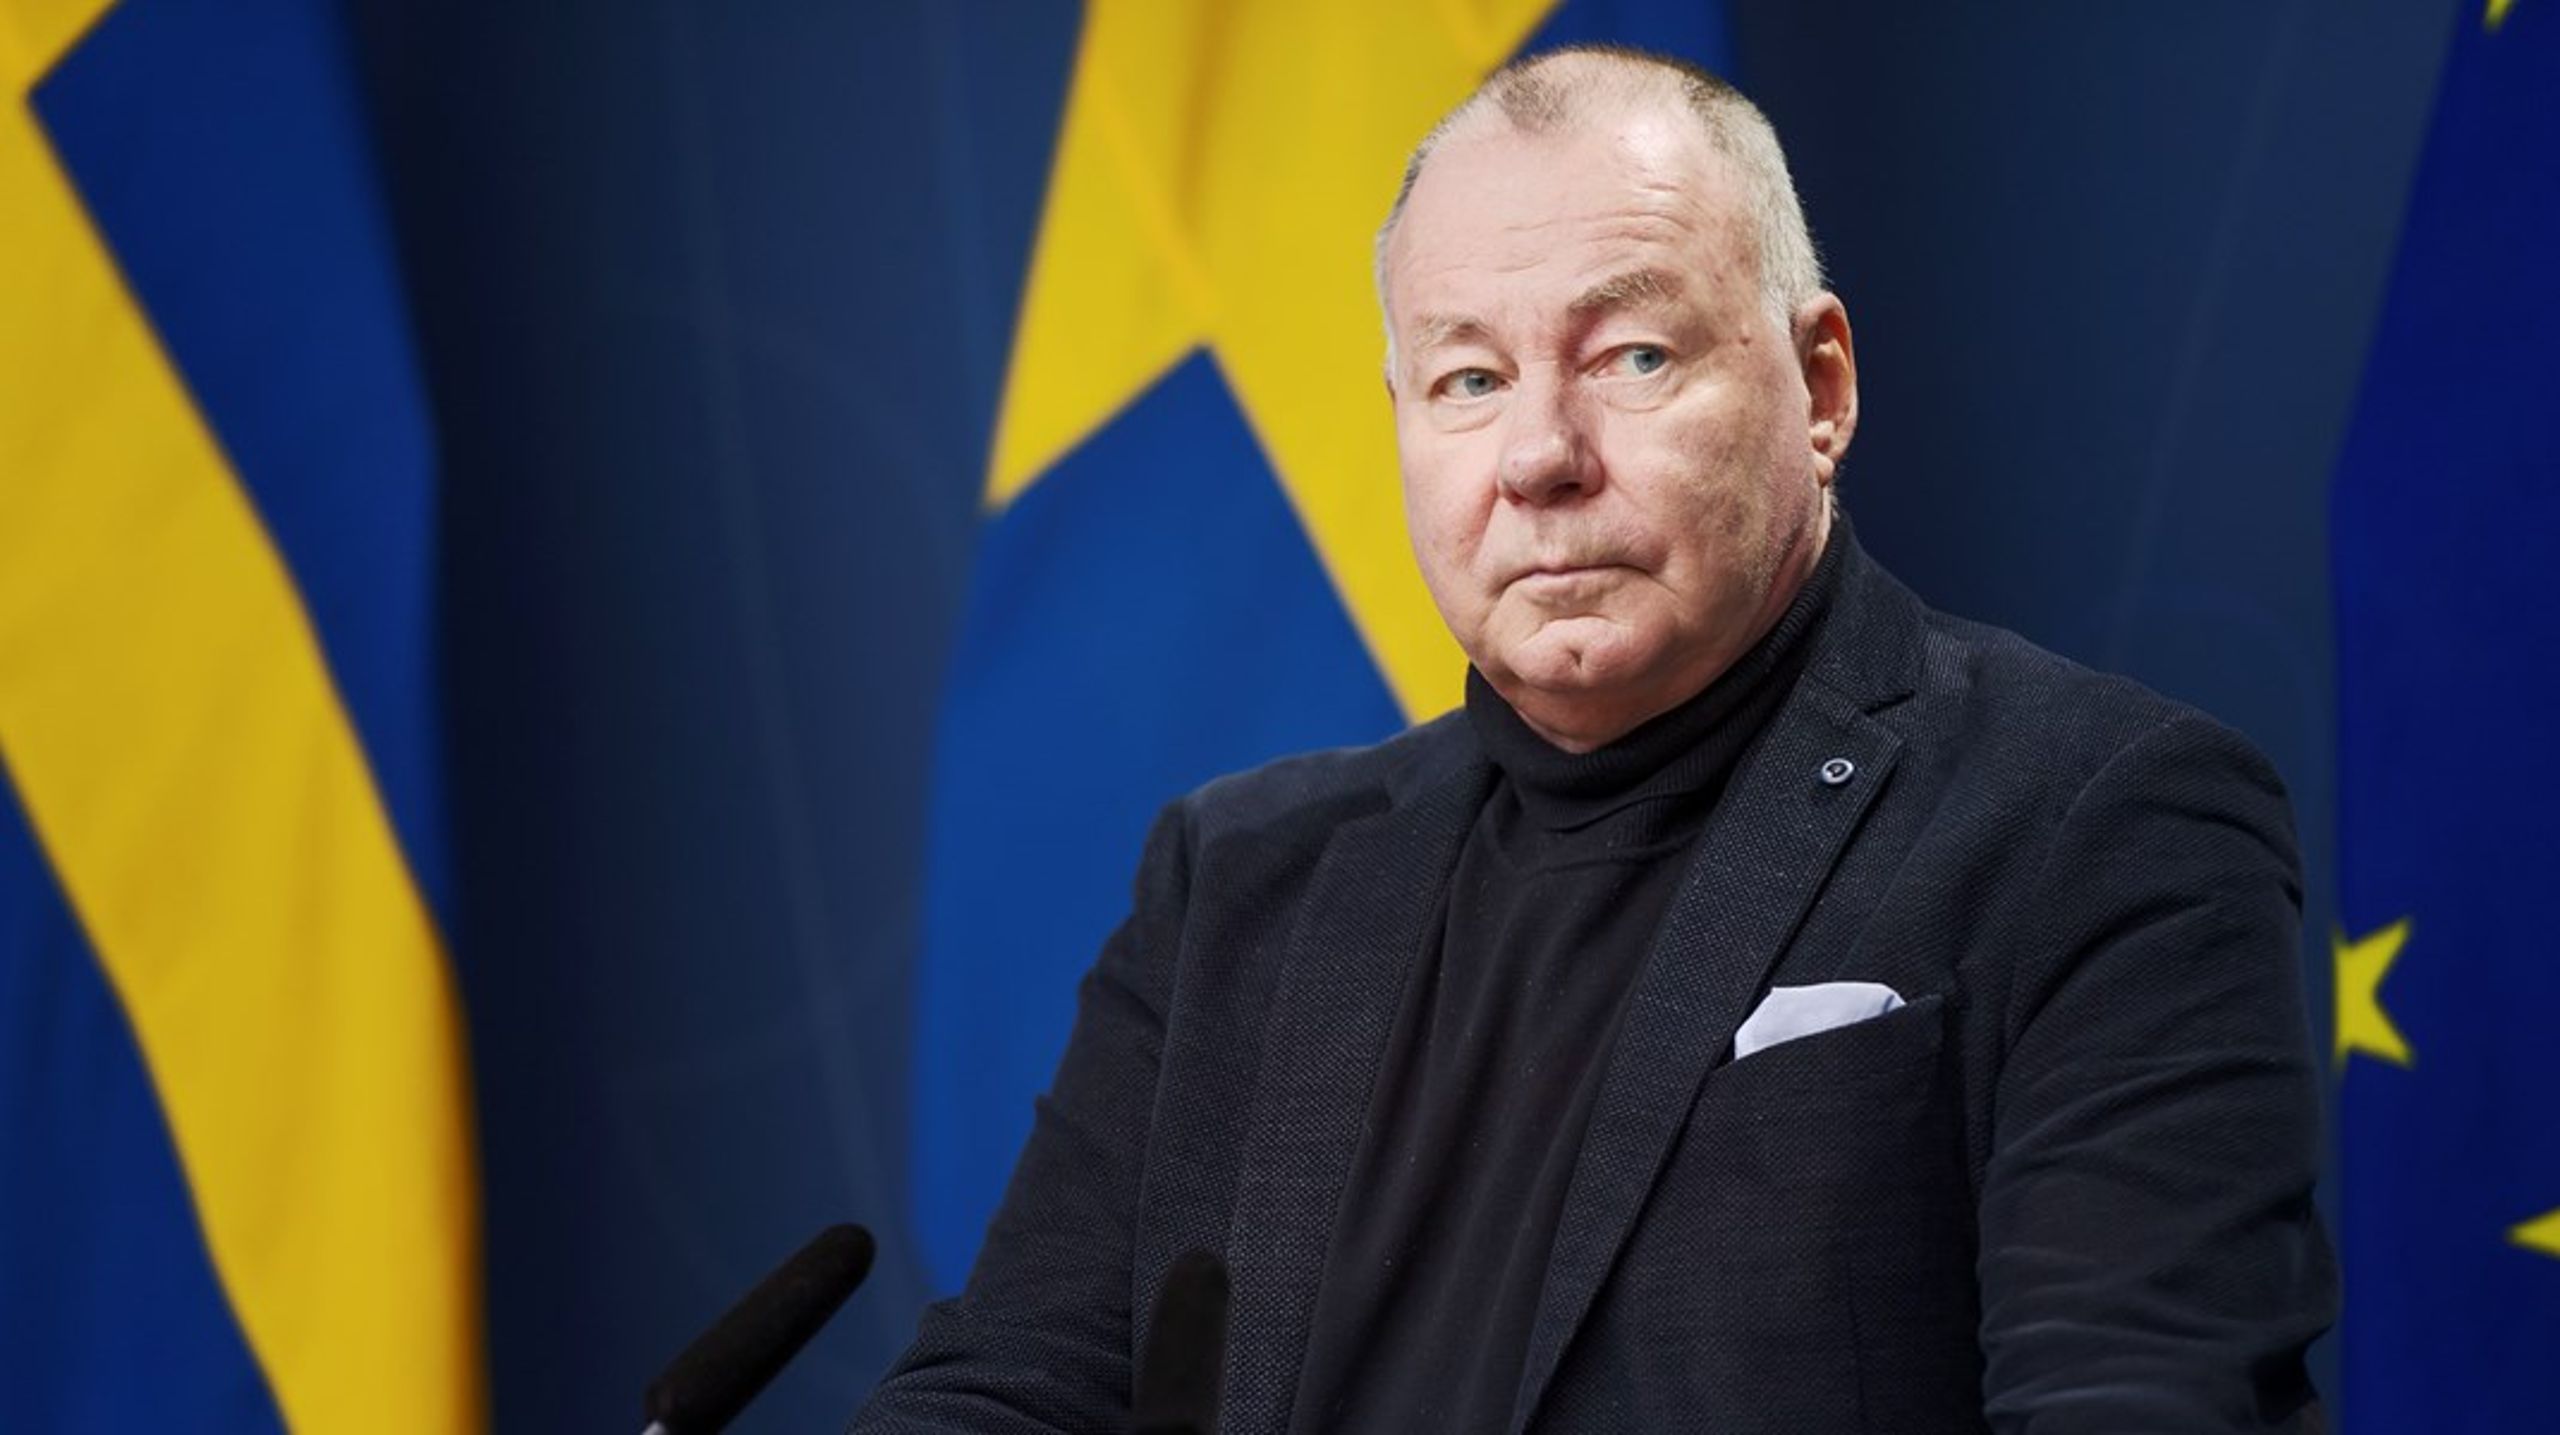 Trots lägre löneökning än snittet tjänar Anders Söderholm, generaldirektör för Universitetskanslersämbetet, fortsatt mest inom utbildningsområdets myndigheter med en lön på 126 500 kronor.